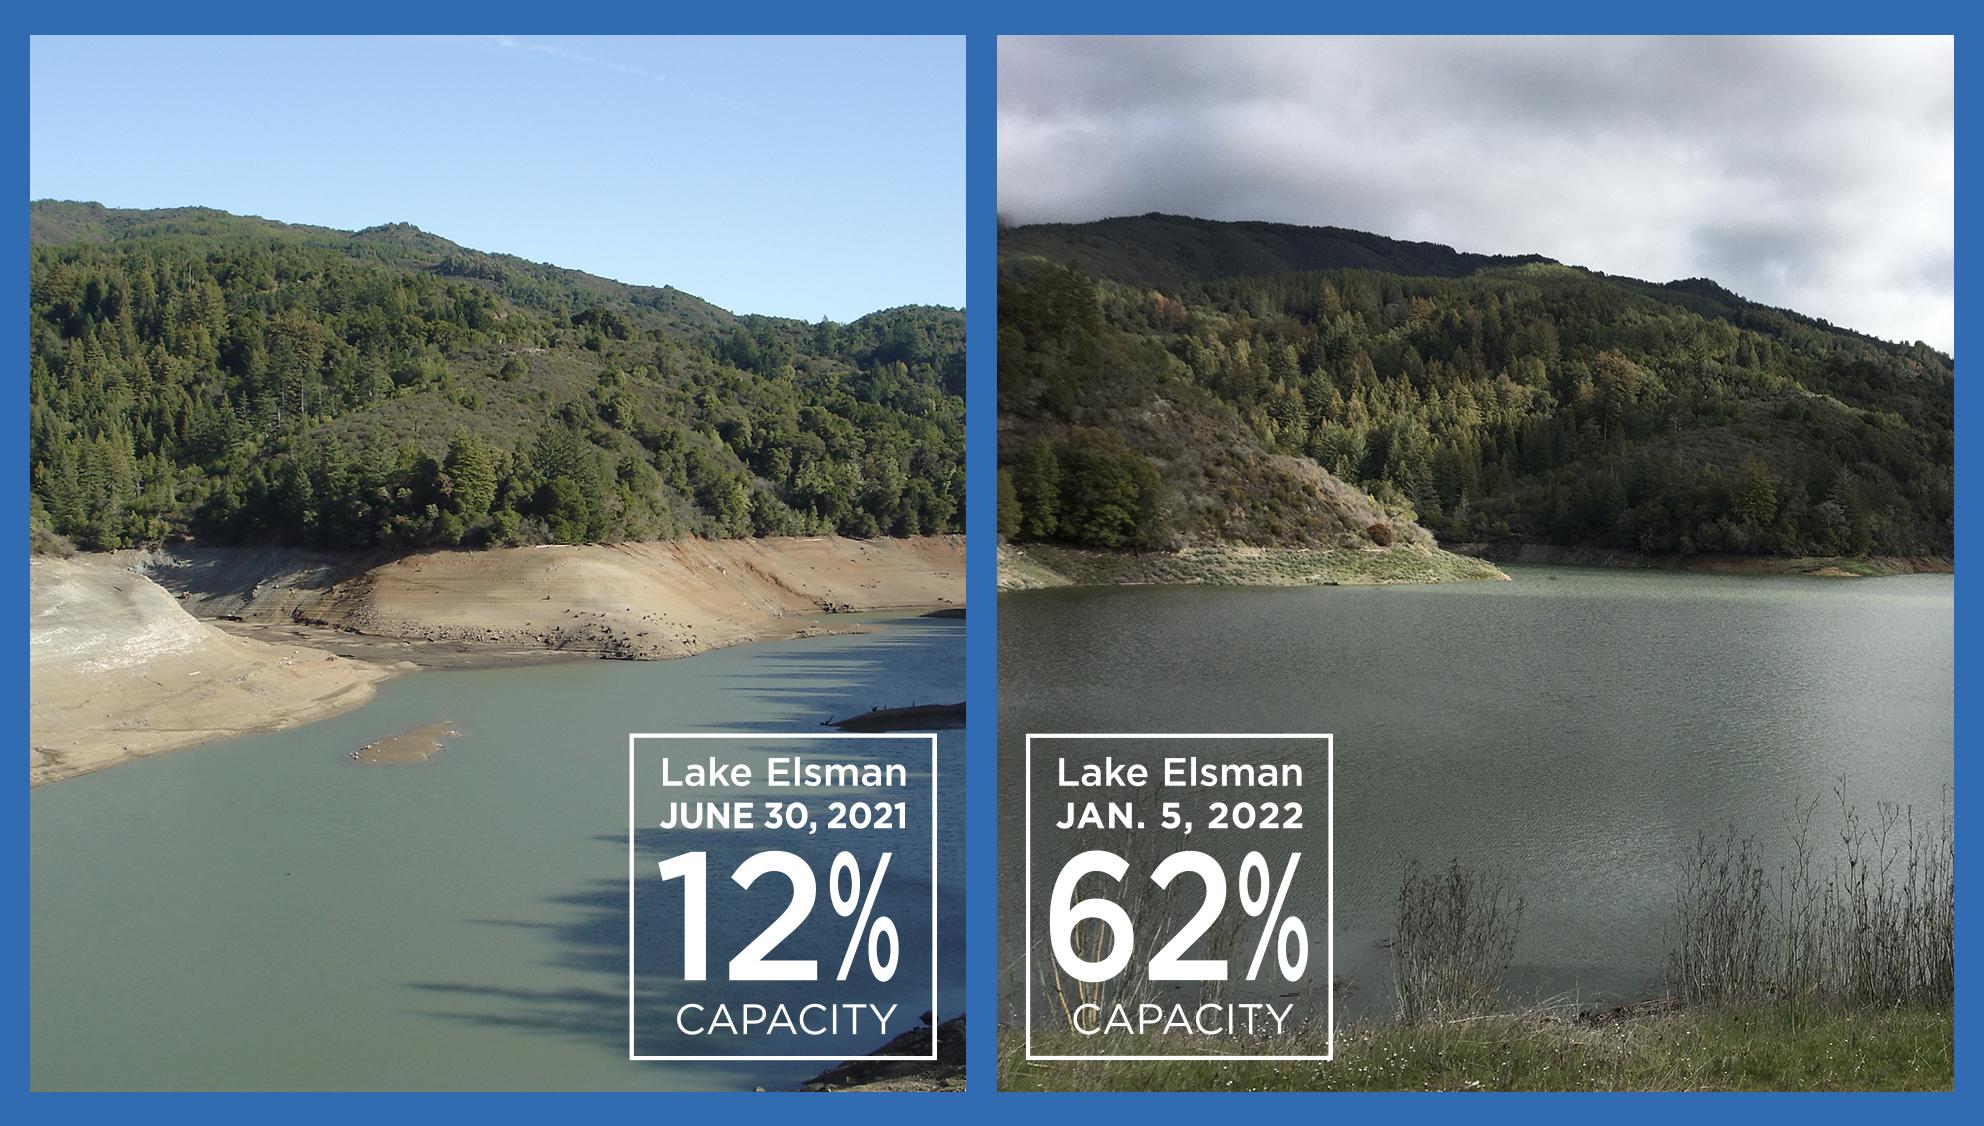 Lake Elsman is at 62% Capacity